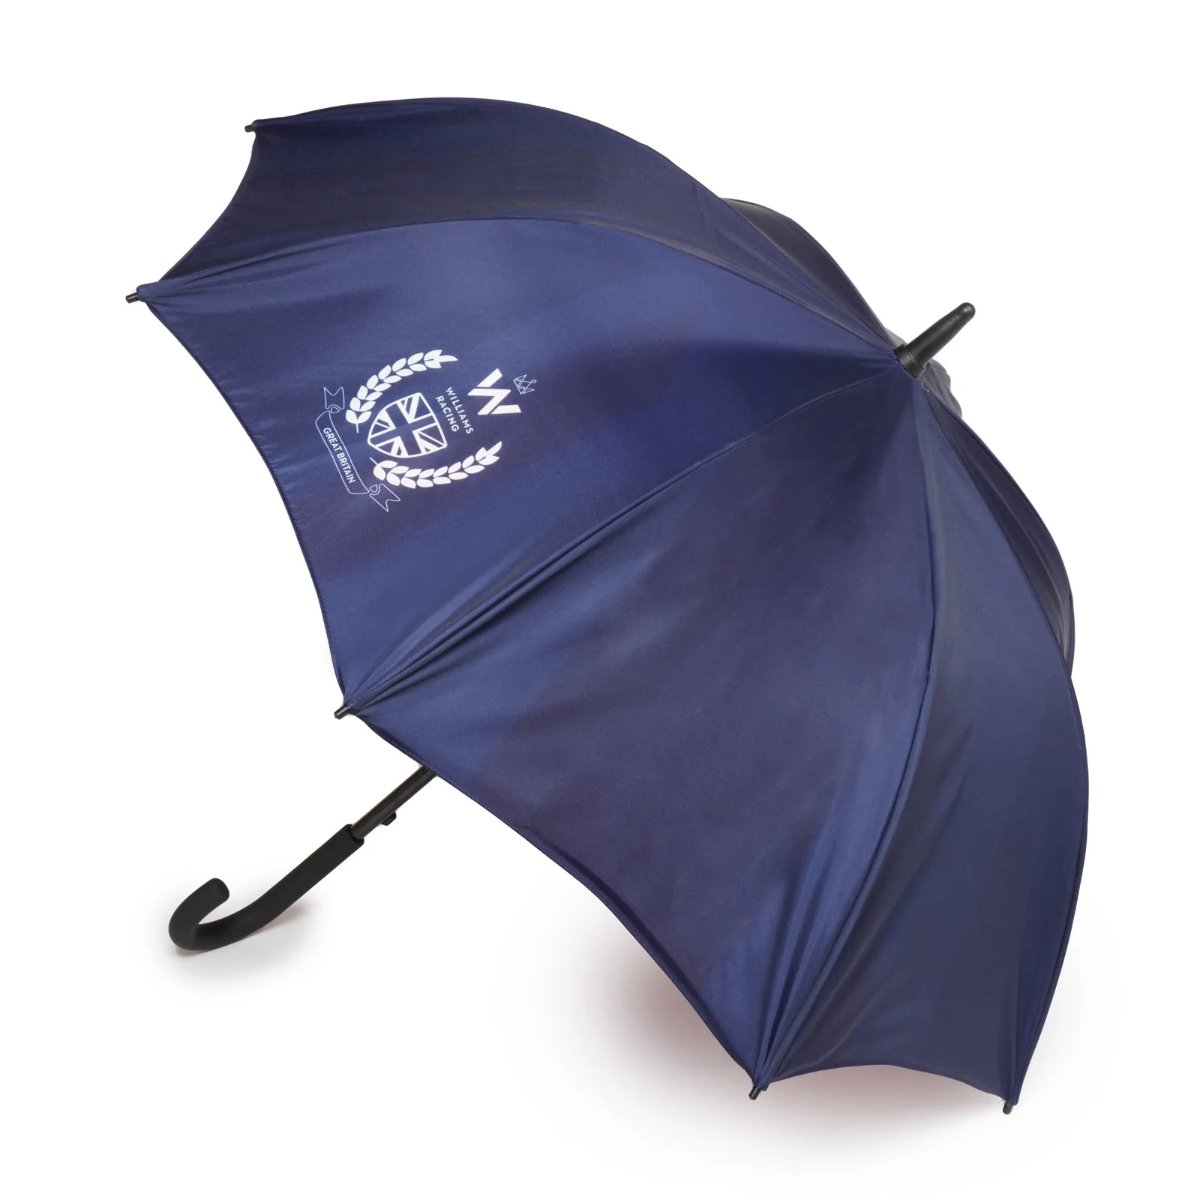 2022 Silverstone Umbrella